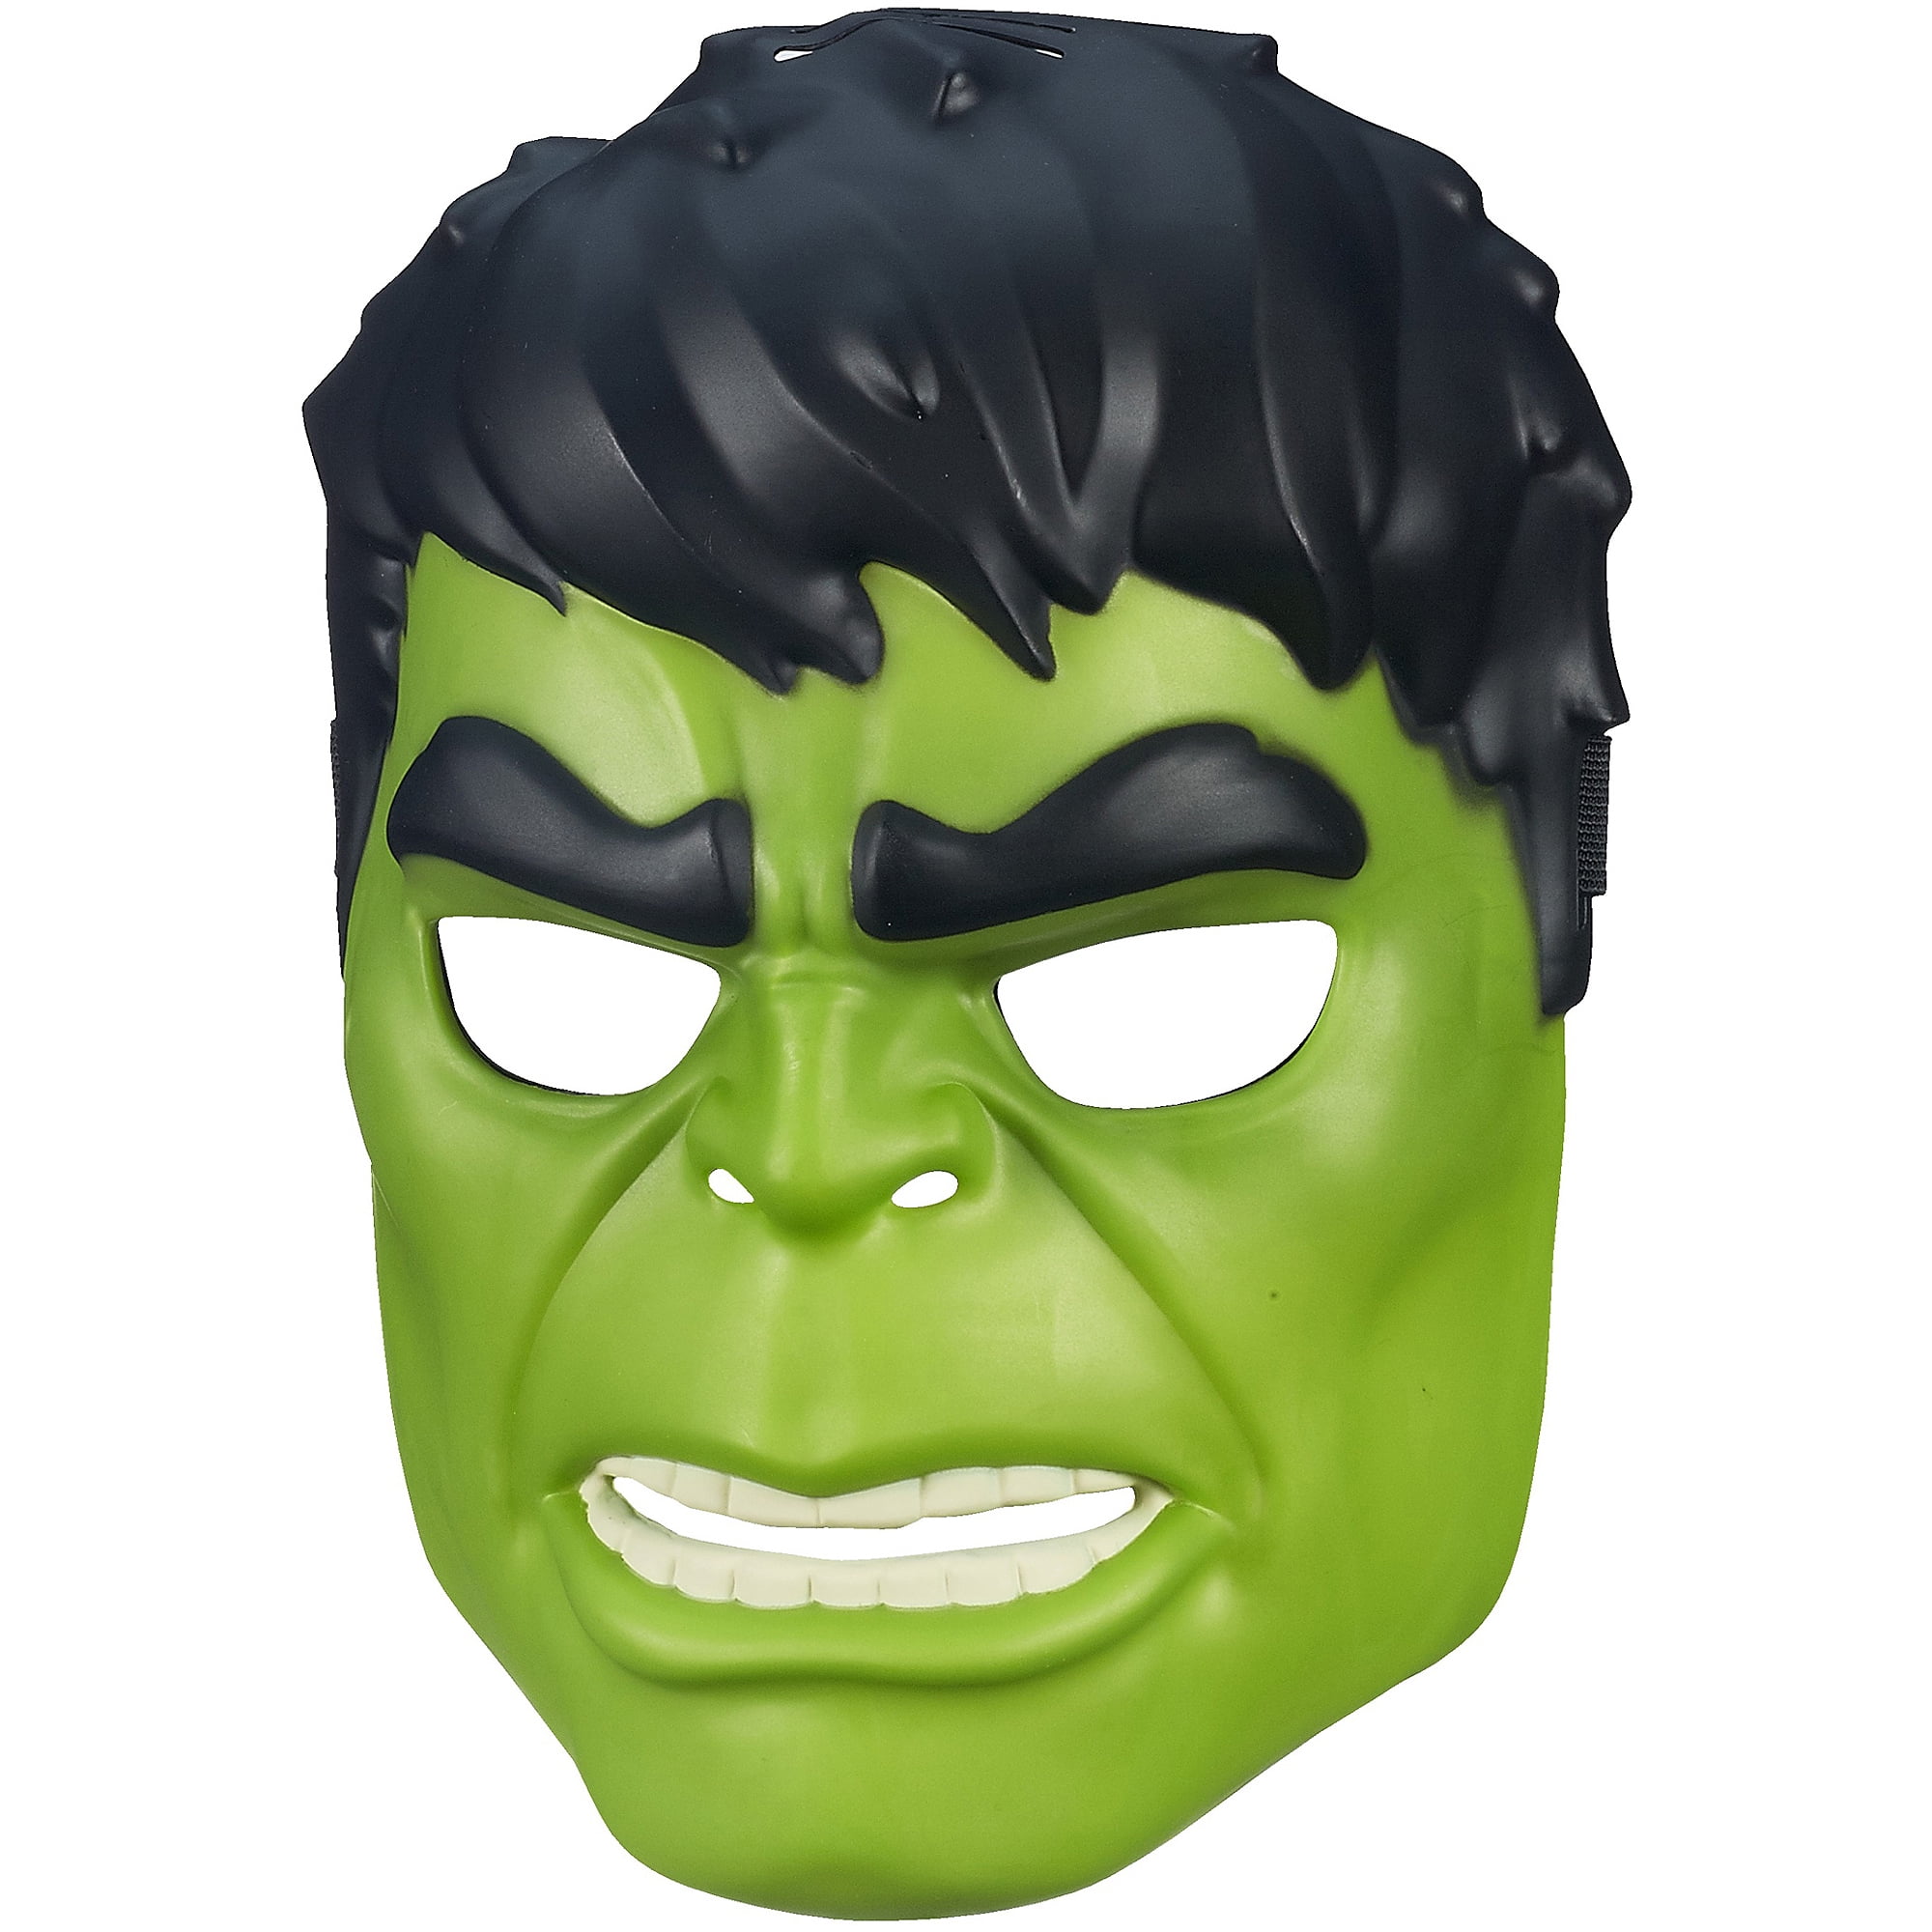 Marvel Avengers Assemble Hulk Hero Mask - Walmart.com